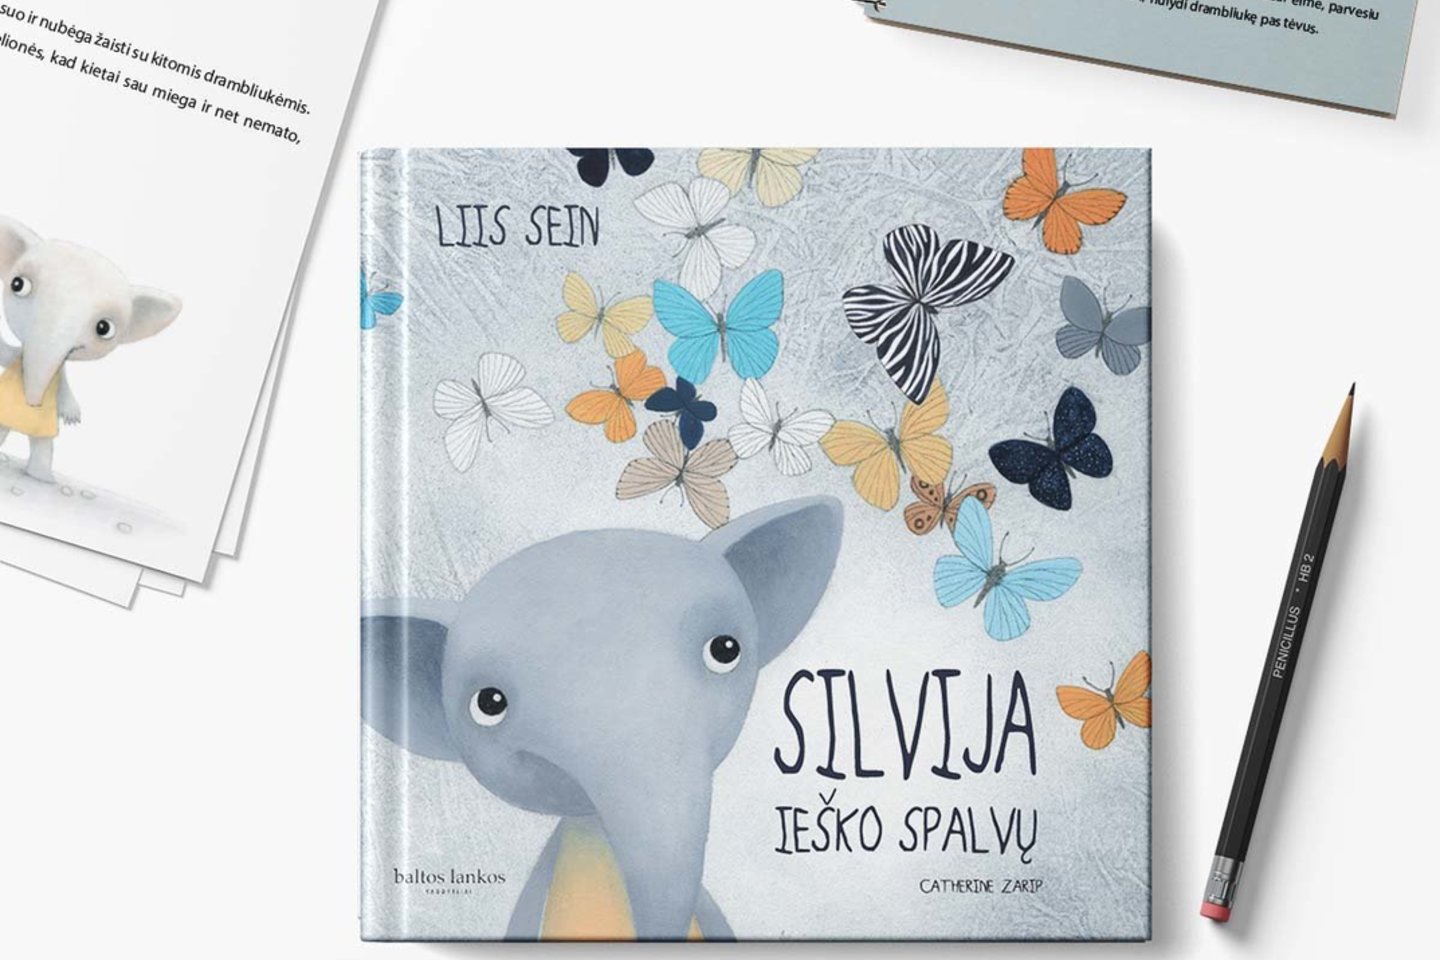 2019 metais knyga apie drambliukę įtraukta į TOP 5 geriausio dizaino knygų vaikams Estijoje sąrašą.<br>Pranešimo spaudai nuotr.